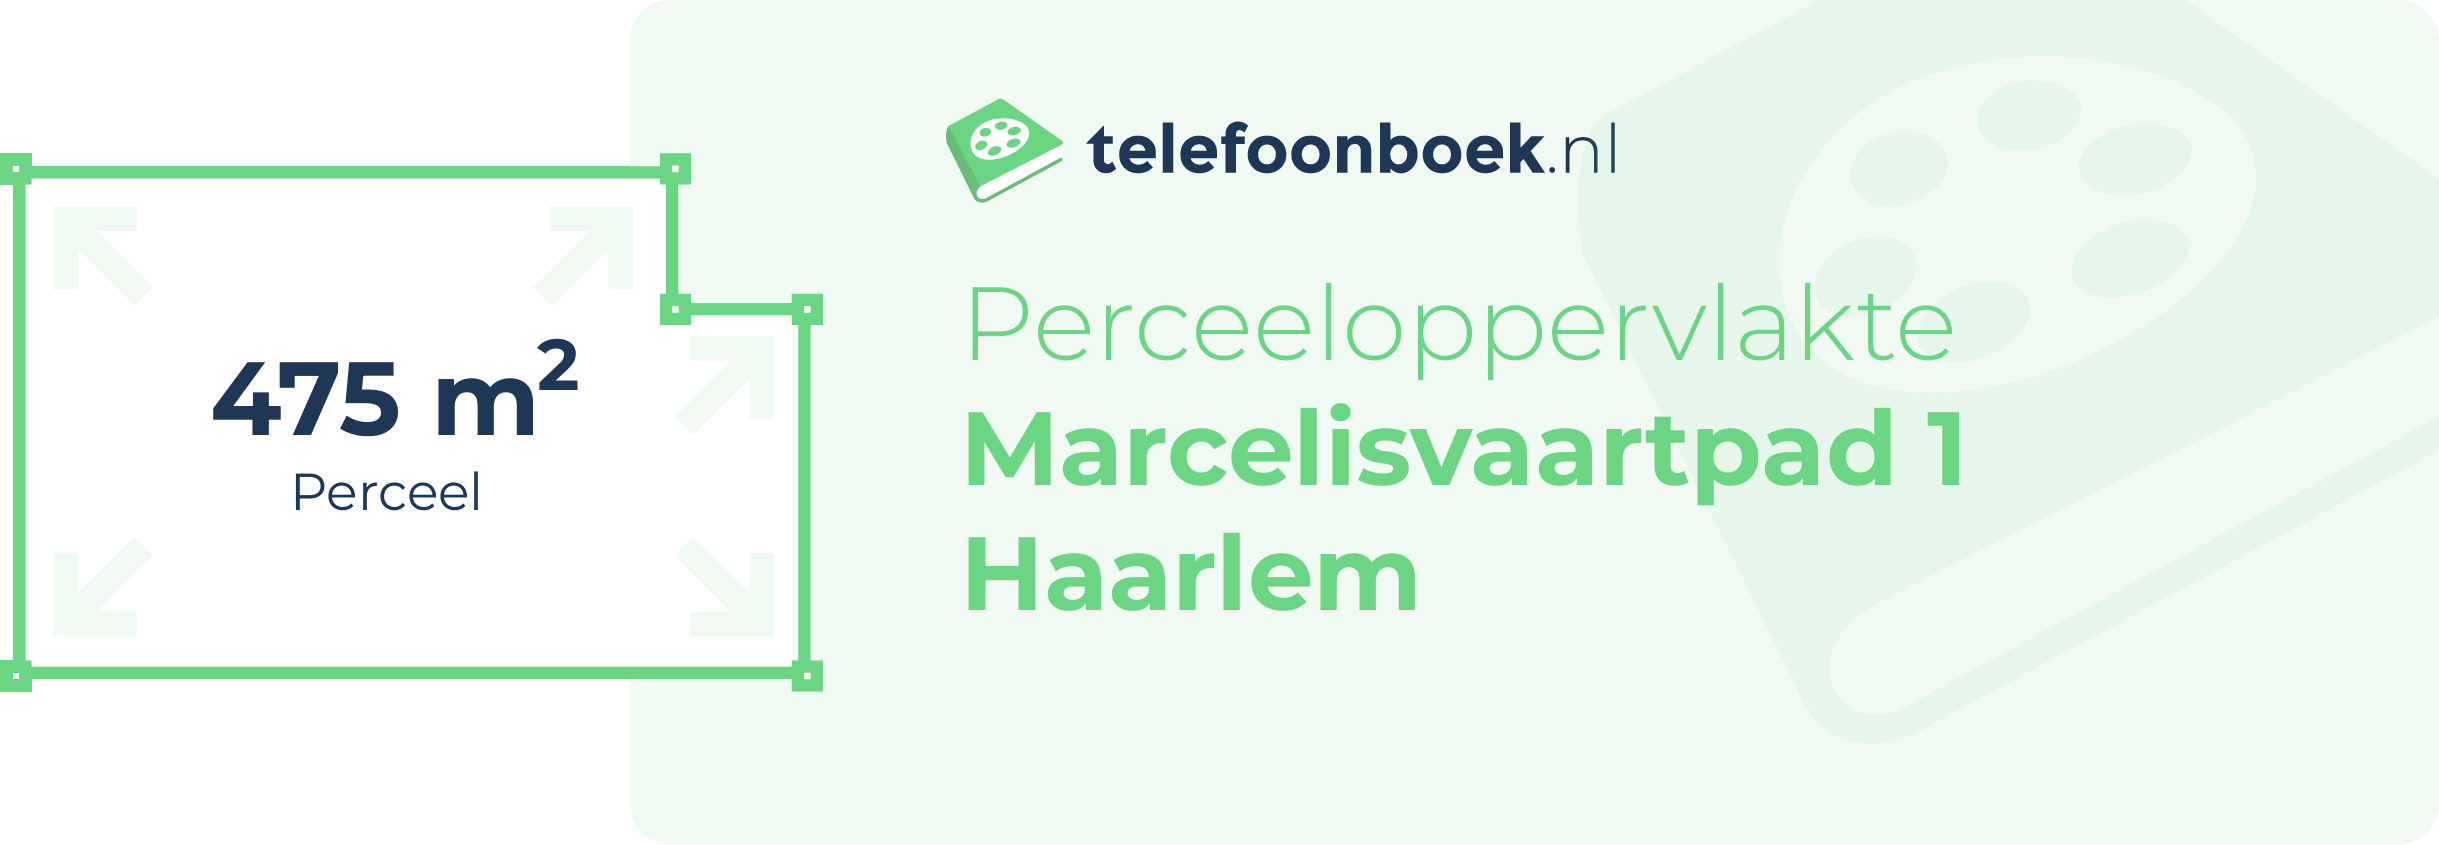 Perceeloppervlakte Marcelisvaartpad 1 Haarlem